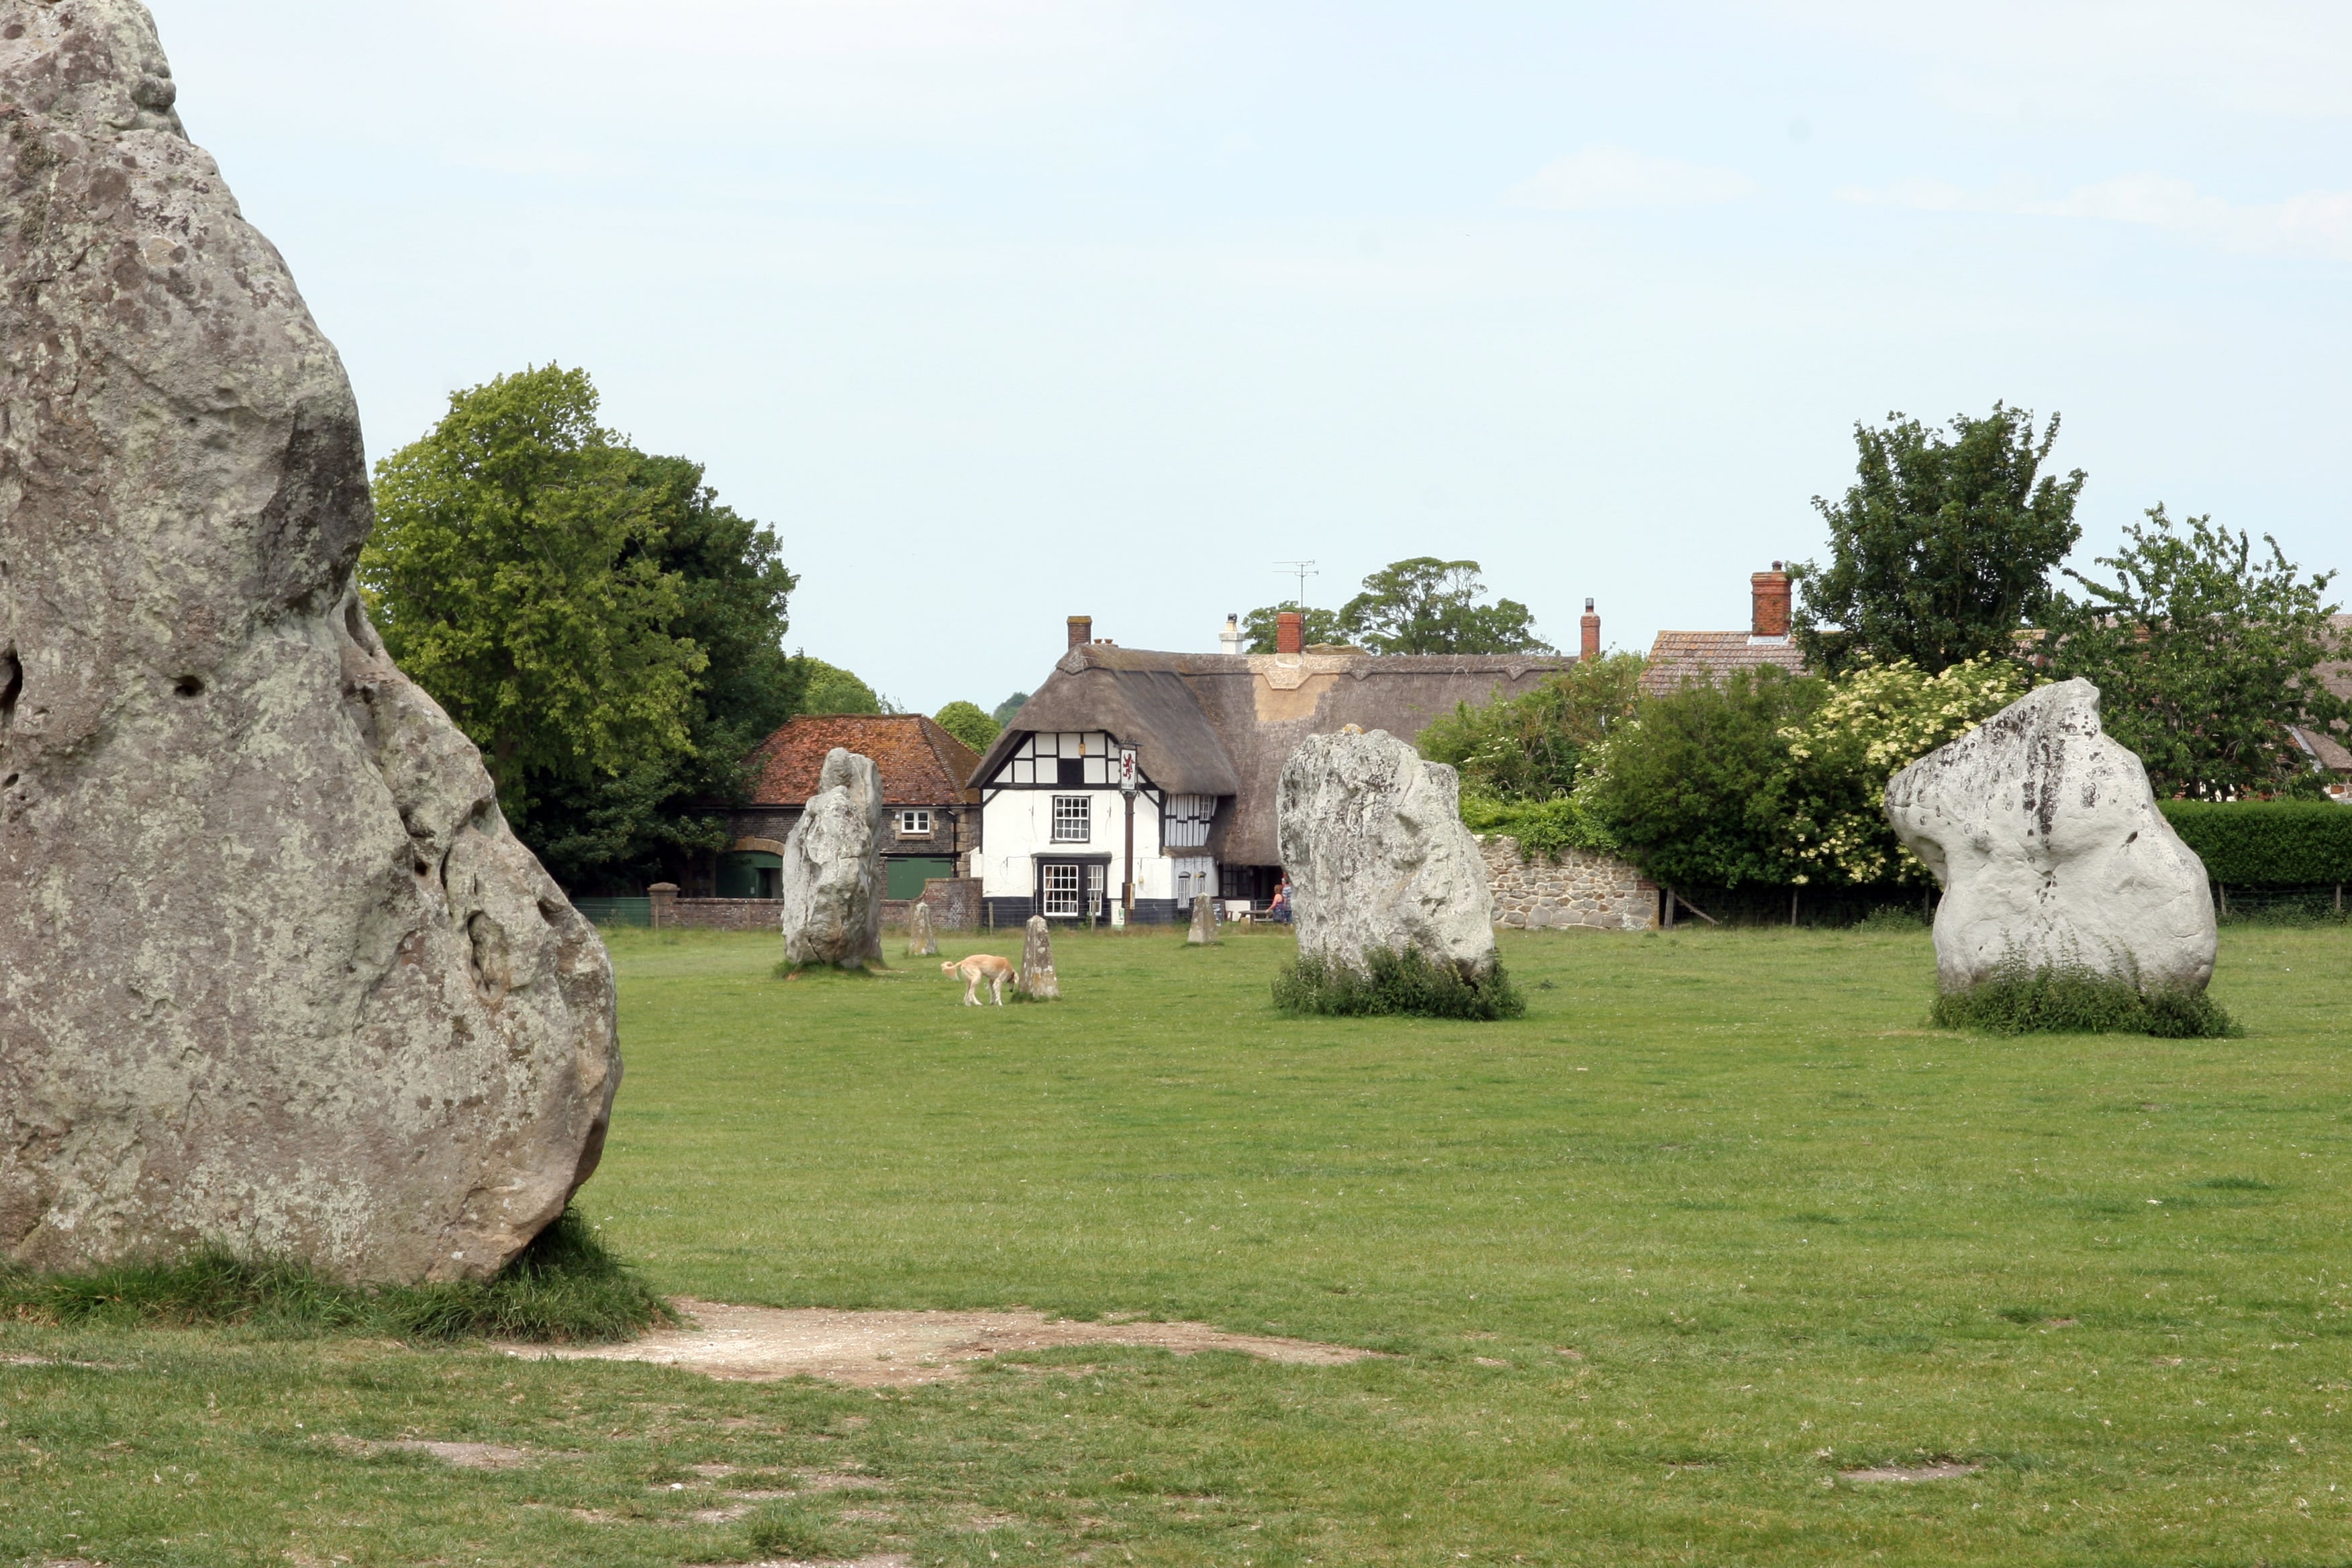 Avebury Stone Circle.